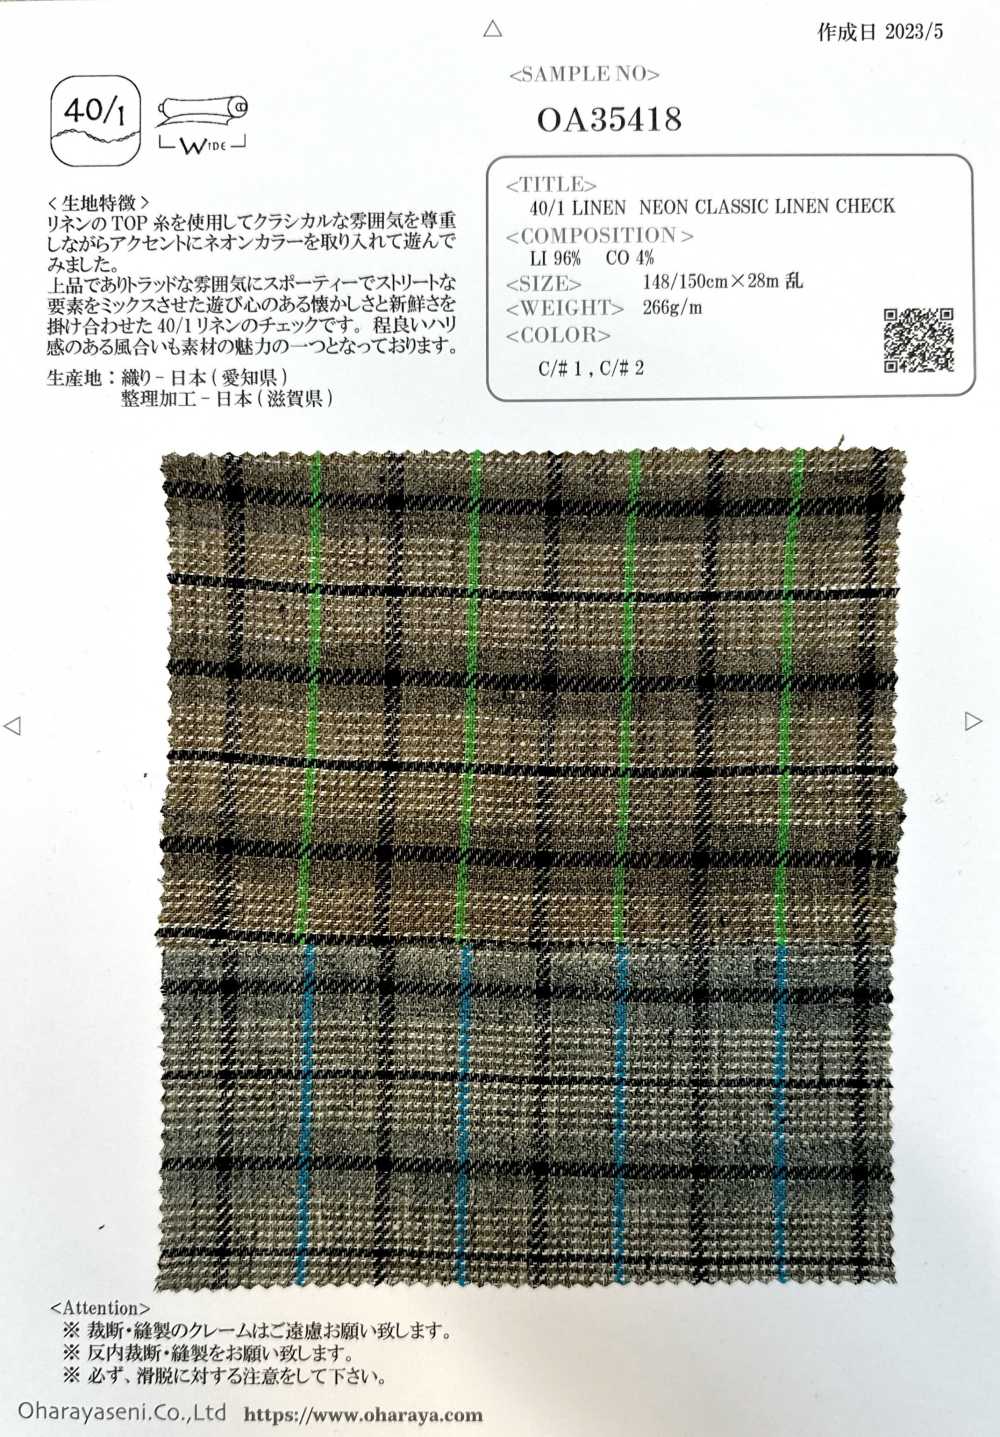 OA35418 40/1 LIN NÉON LIN CLASSIQUE À CARREAUX[Fabrication De Textile] Oharayaseni